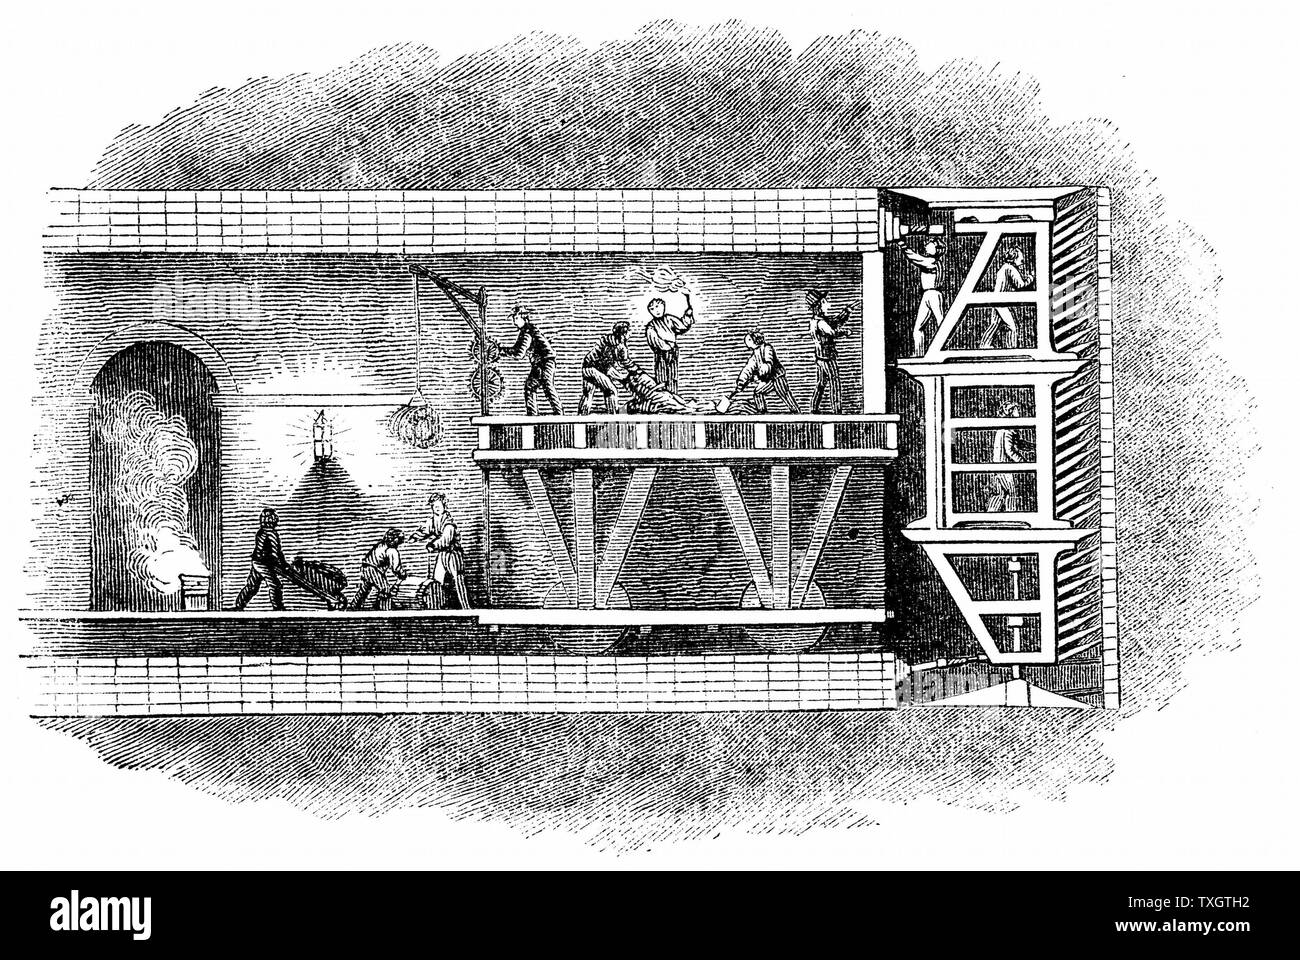 L'article de Thames Tunnel (1825-1843) montrant des hommes au travail dans la protection (à droite) tandis que d'autres plats à emporter se gâter. Photo montre également la construction de maçonnerie en arc à l'aide de ciment romain derrière le bouclier. Brevet pour cette première protection de tunnels par Marc Isambart Brunel 1818. Marc Isambart Brunel était ingénieur. Encore un tunnel utilisé par les trains électriques entre Whitechapel et New Cross 1842 Gravure sur bois, Londres Banque D'Images